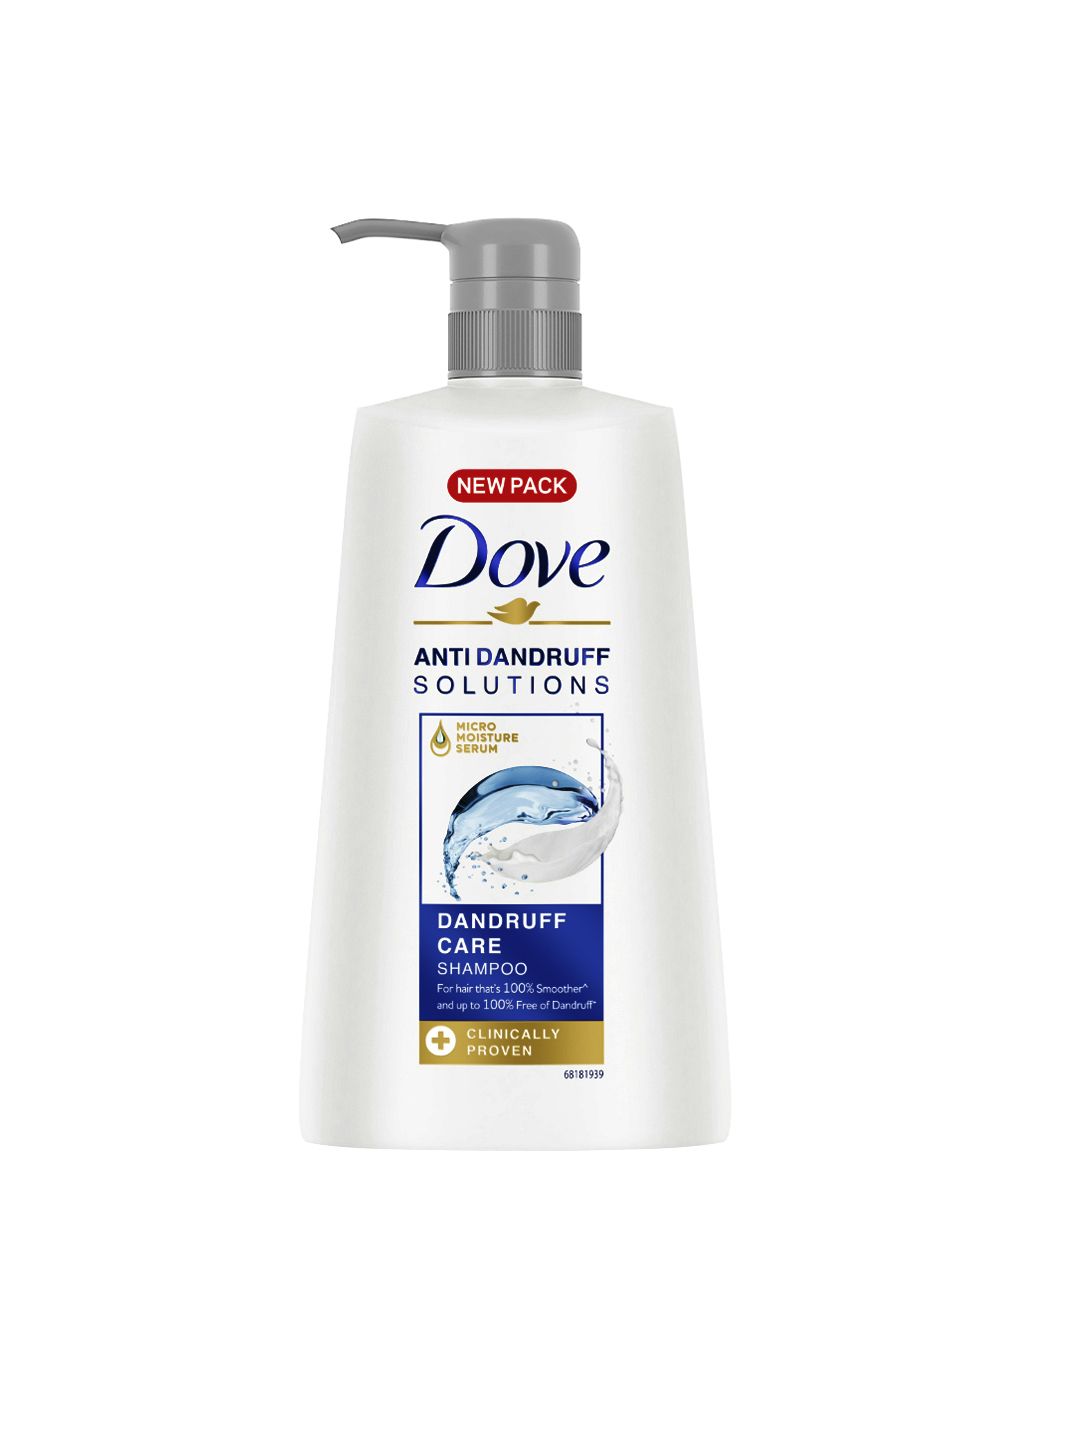 Dove Anti Dandruff Solutions Dandruff Care Shampoo 650 ml Price in India